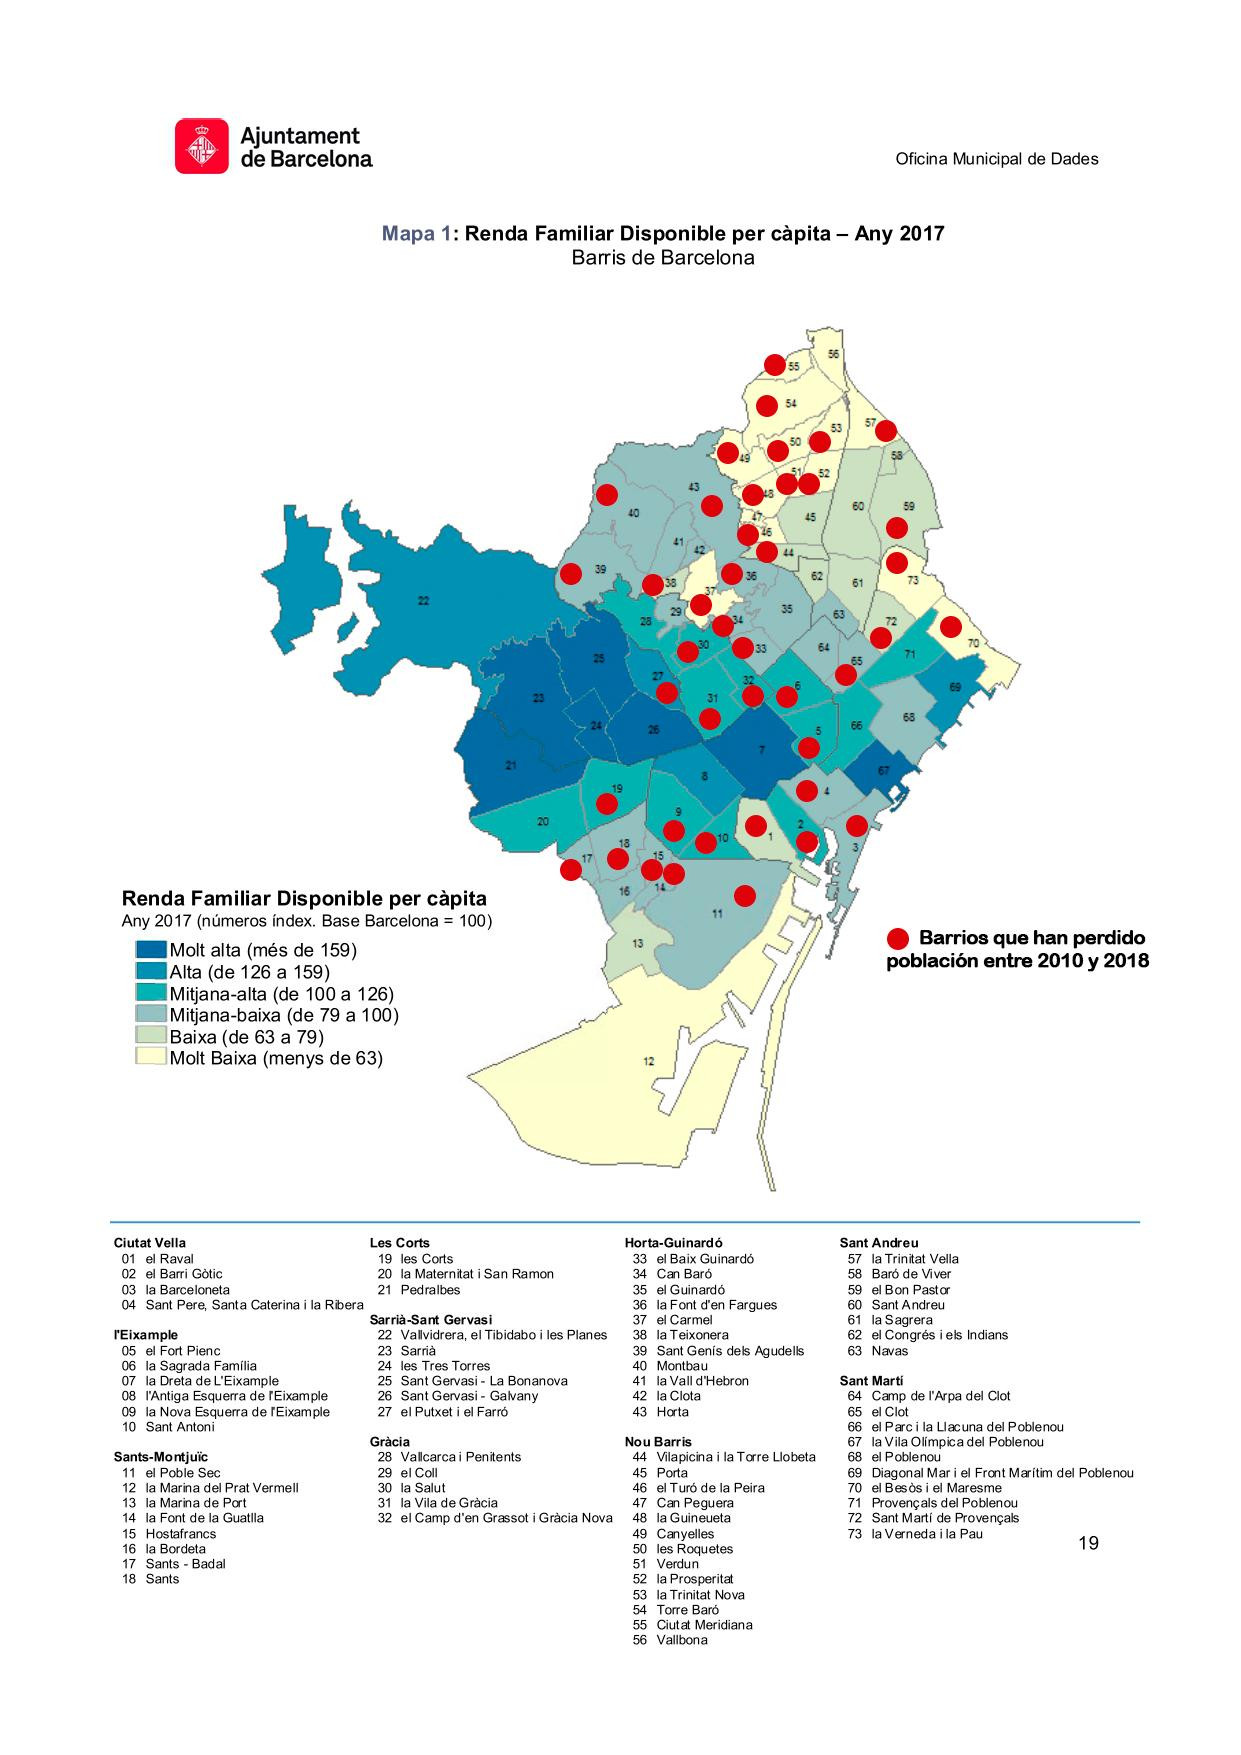 Distribución de las rentas en Barcelona, año 2017, y barrios que han perdido vecinos desde 2010